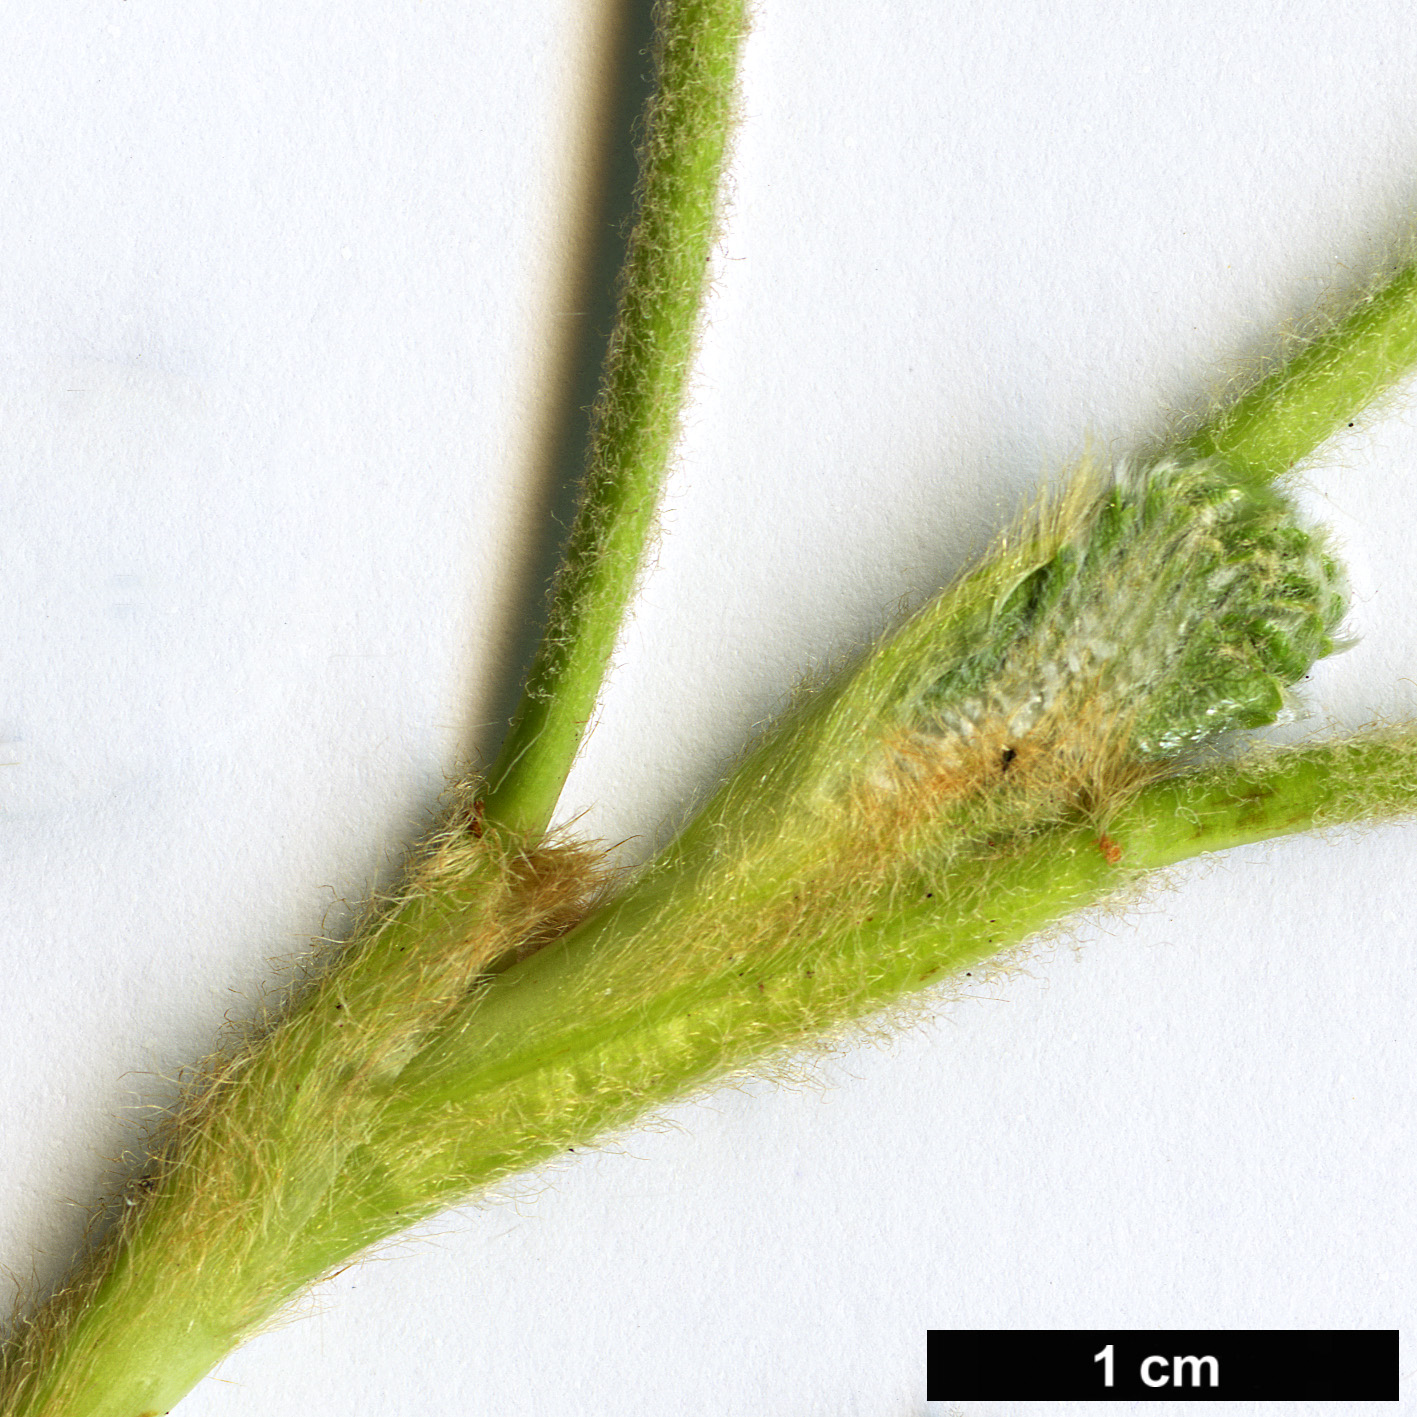 High resolution image: Family: Rosaceae - Genus: Polylepis - Taxon: quadrijuga